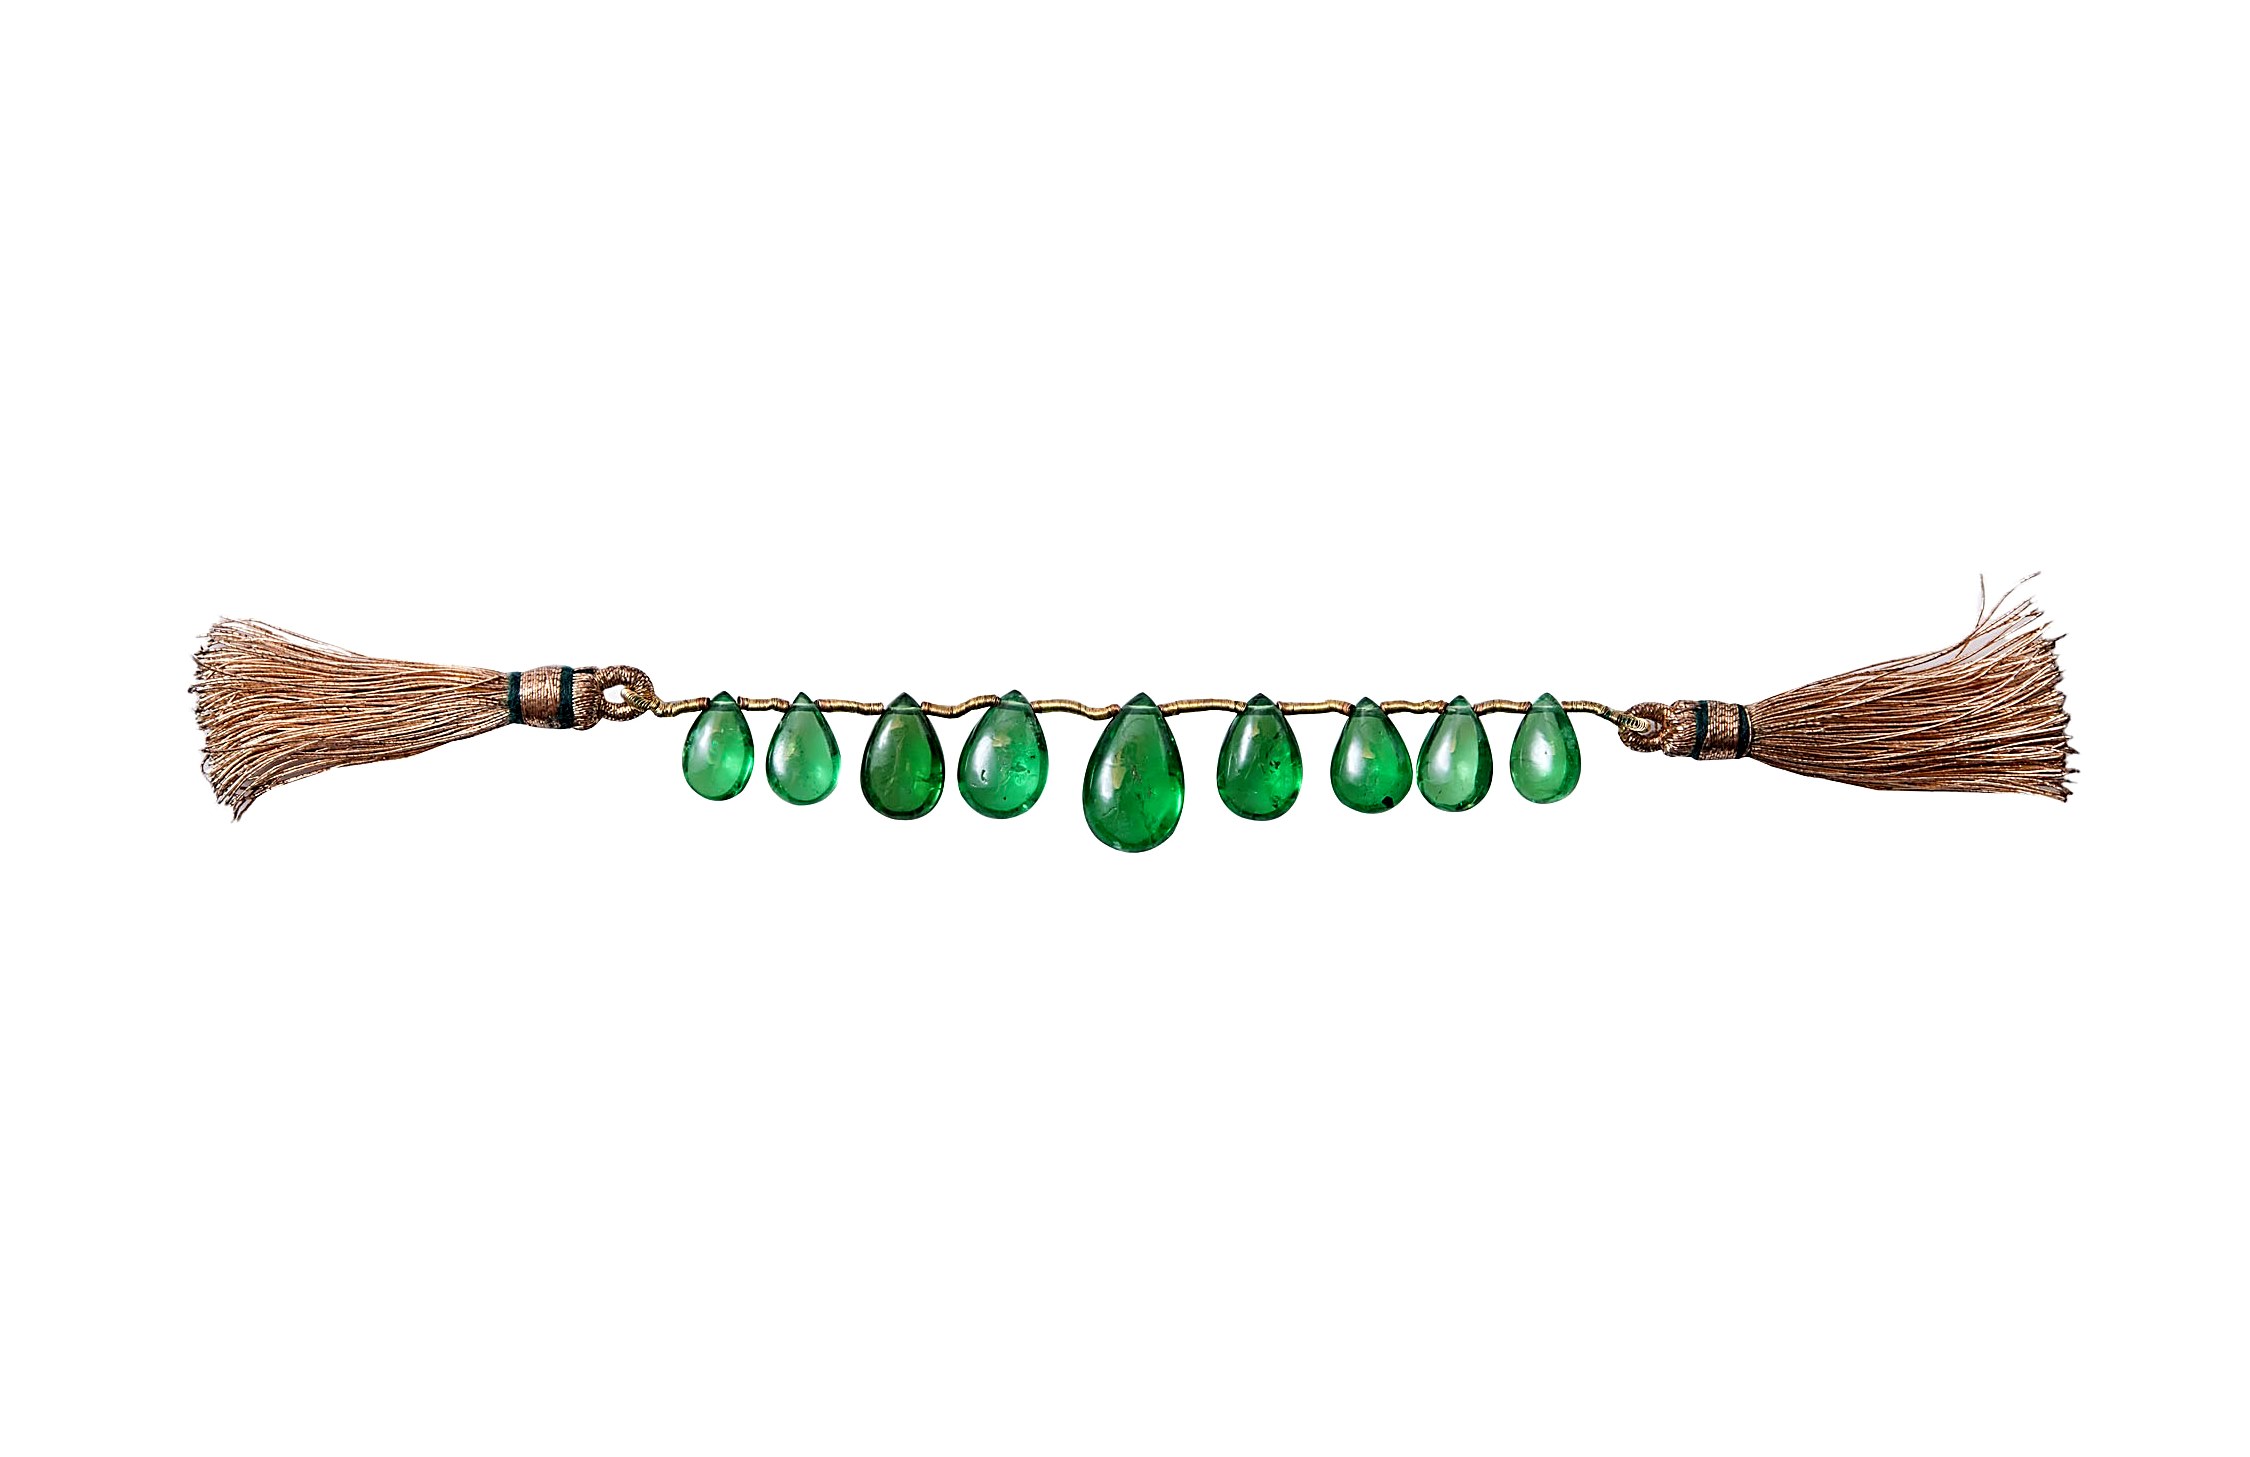 Nine (9) Tsavorite Beads (Grossular-Garnet) - 19.05 ct, Kenya - Image 8 of 10